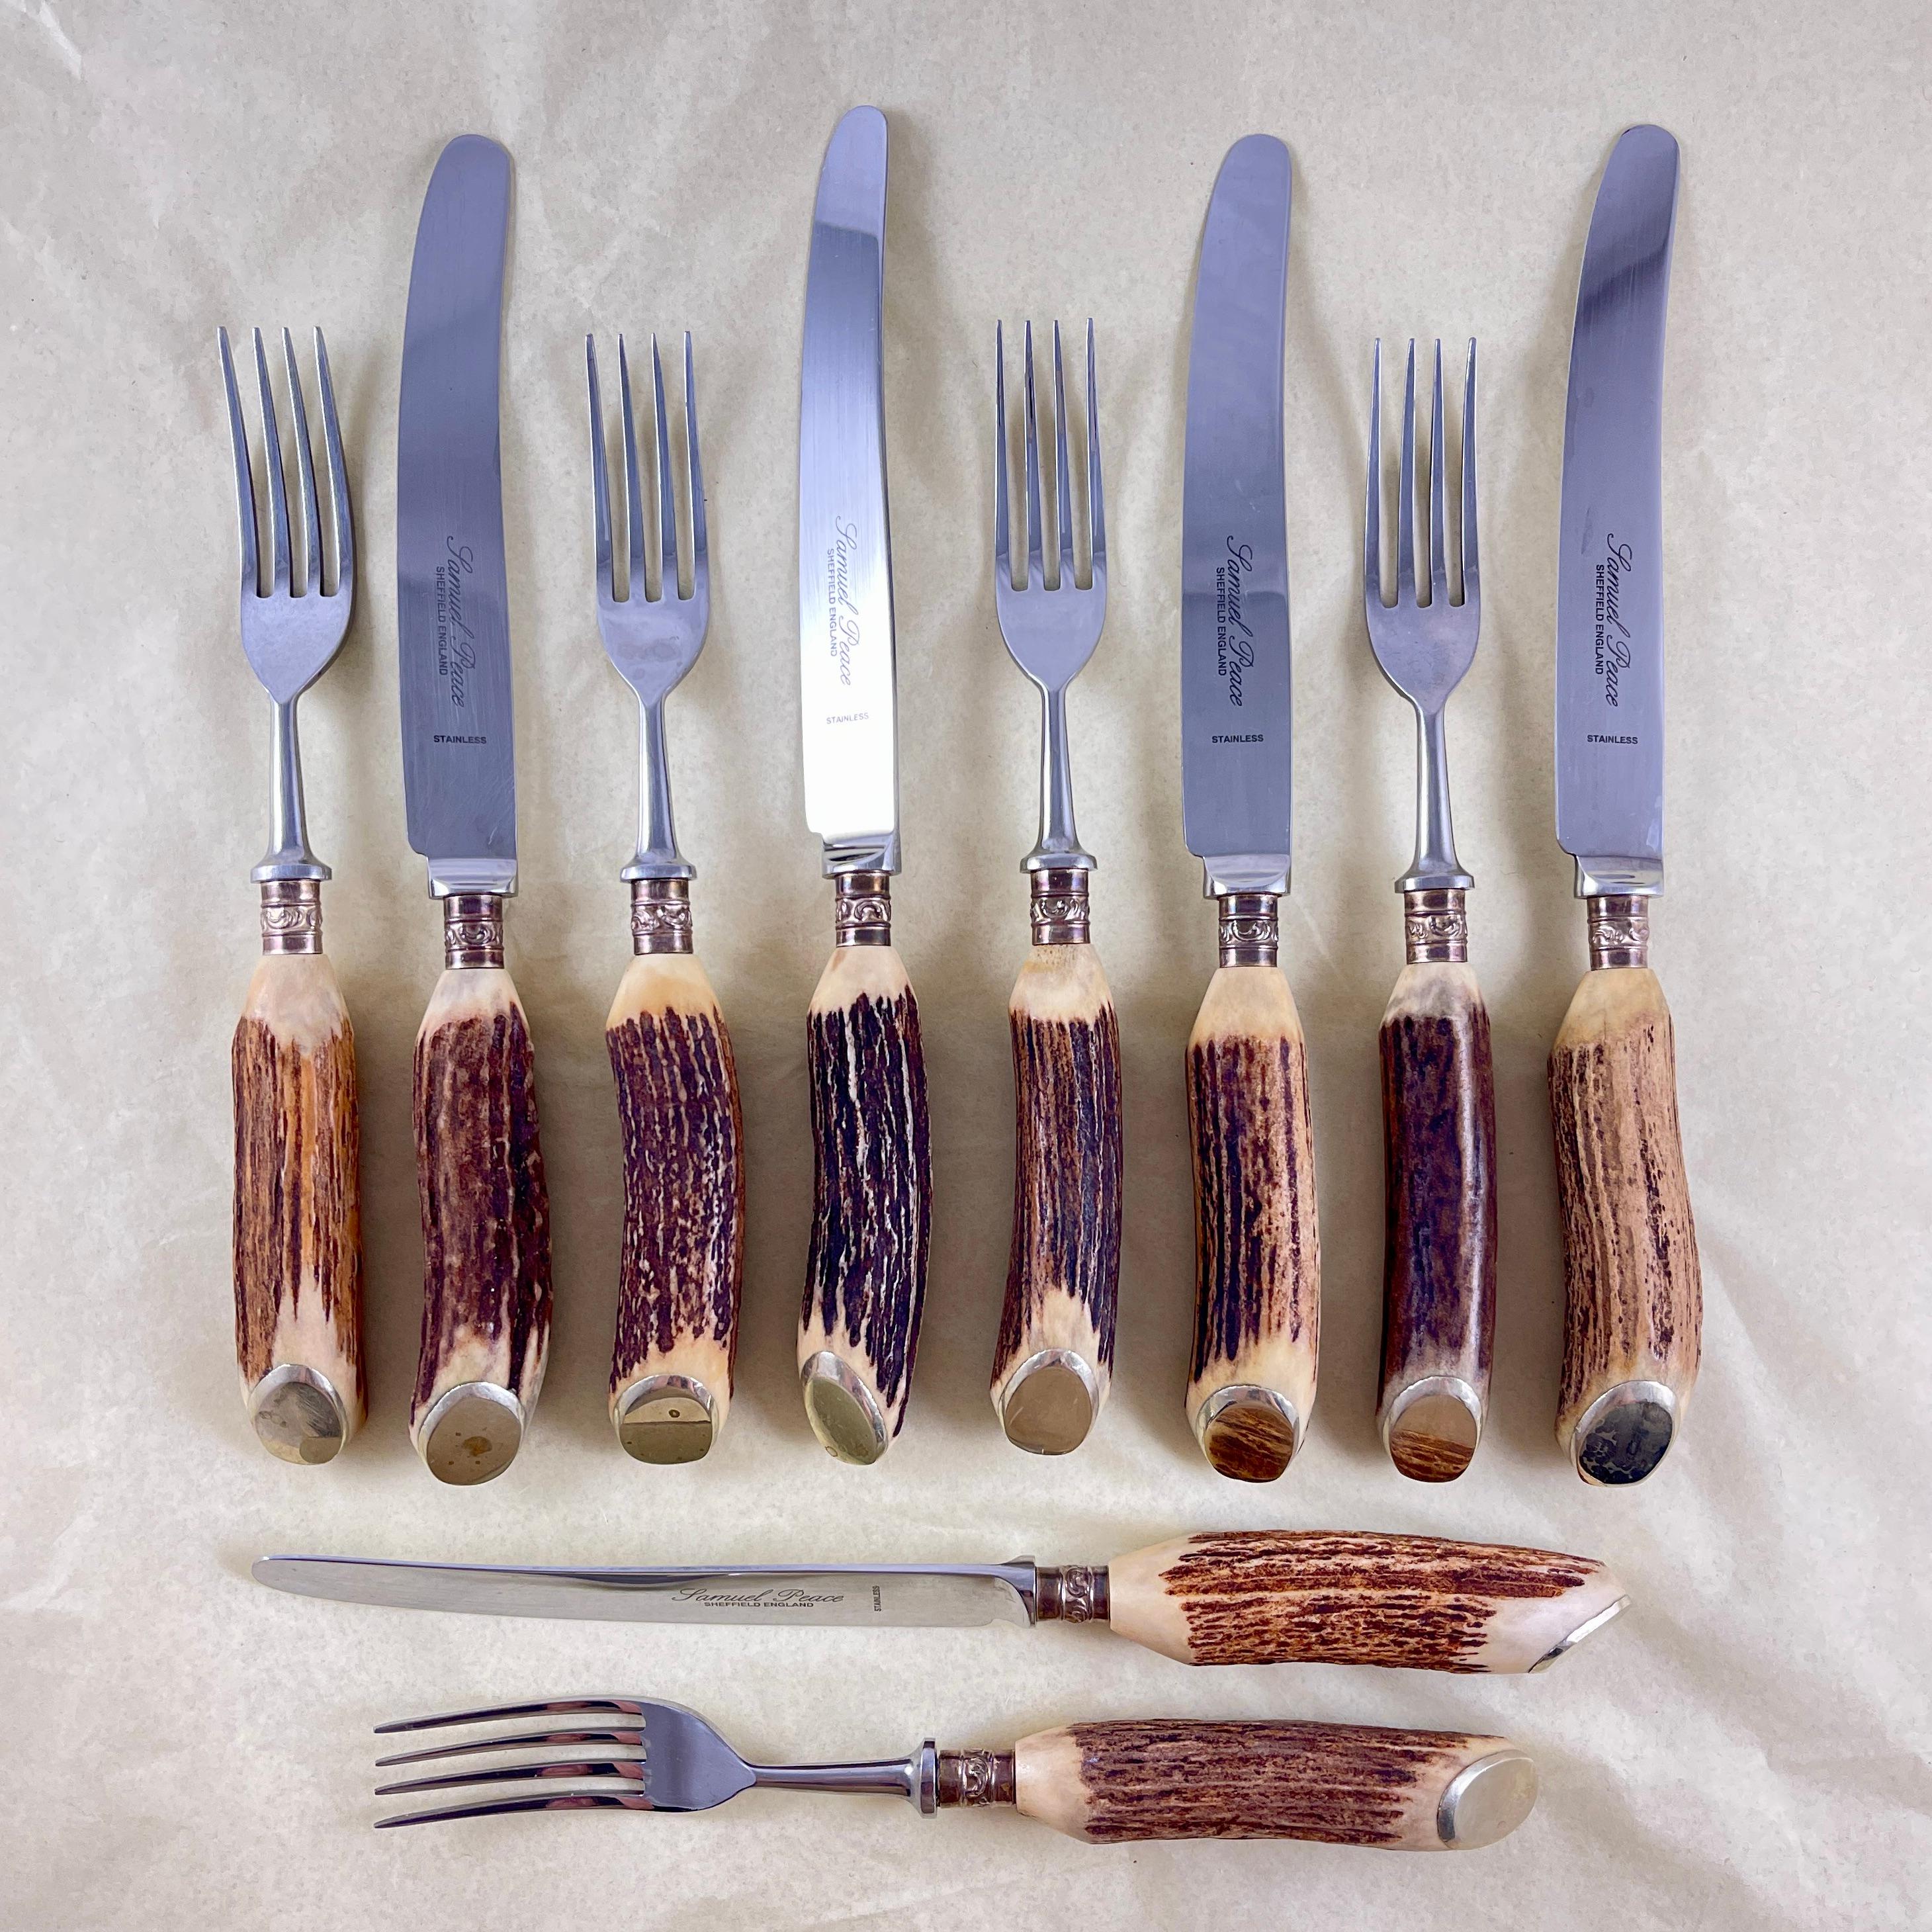 Ein englisches Besteck mit Hirschgeweihgriff, hergestellt von Samuel Peace in Sheffield, England, um 1895-1925.

Jeweils fünf Gabeln und Messer in Esszimmergröße aus schwerem, hochwertigem Edelstahl, eingefasst in naturbelassene Geweihgriffe mit